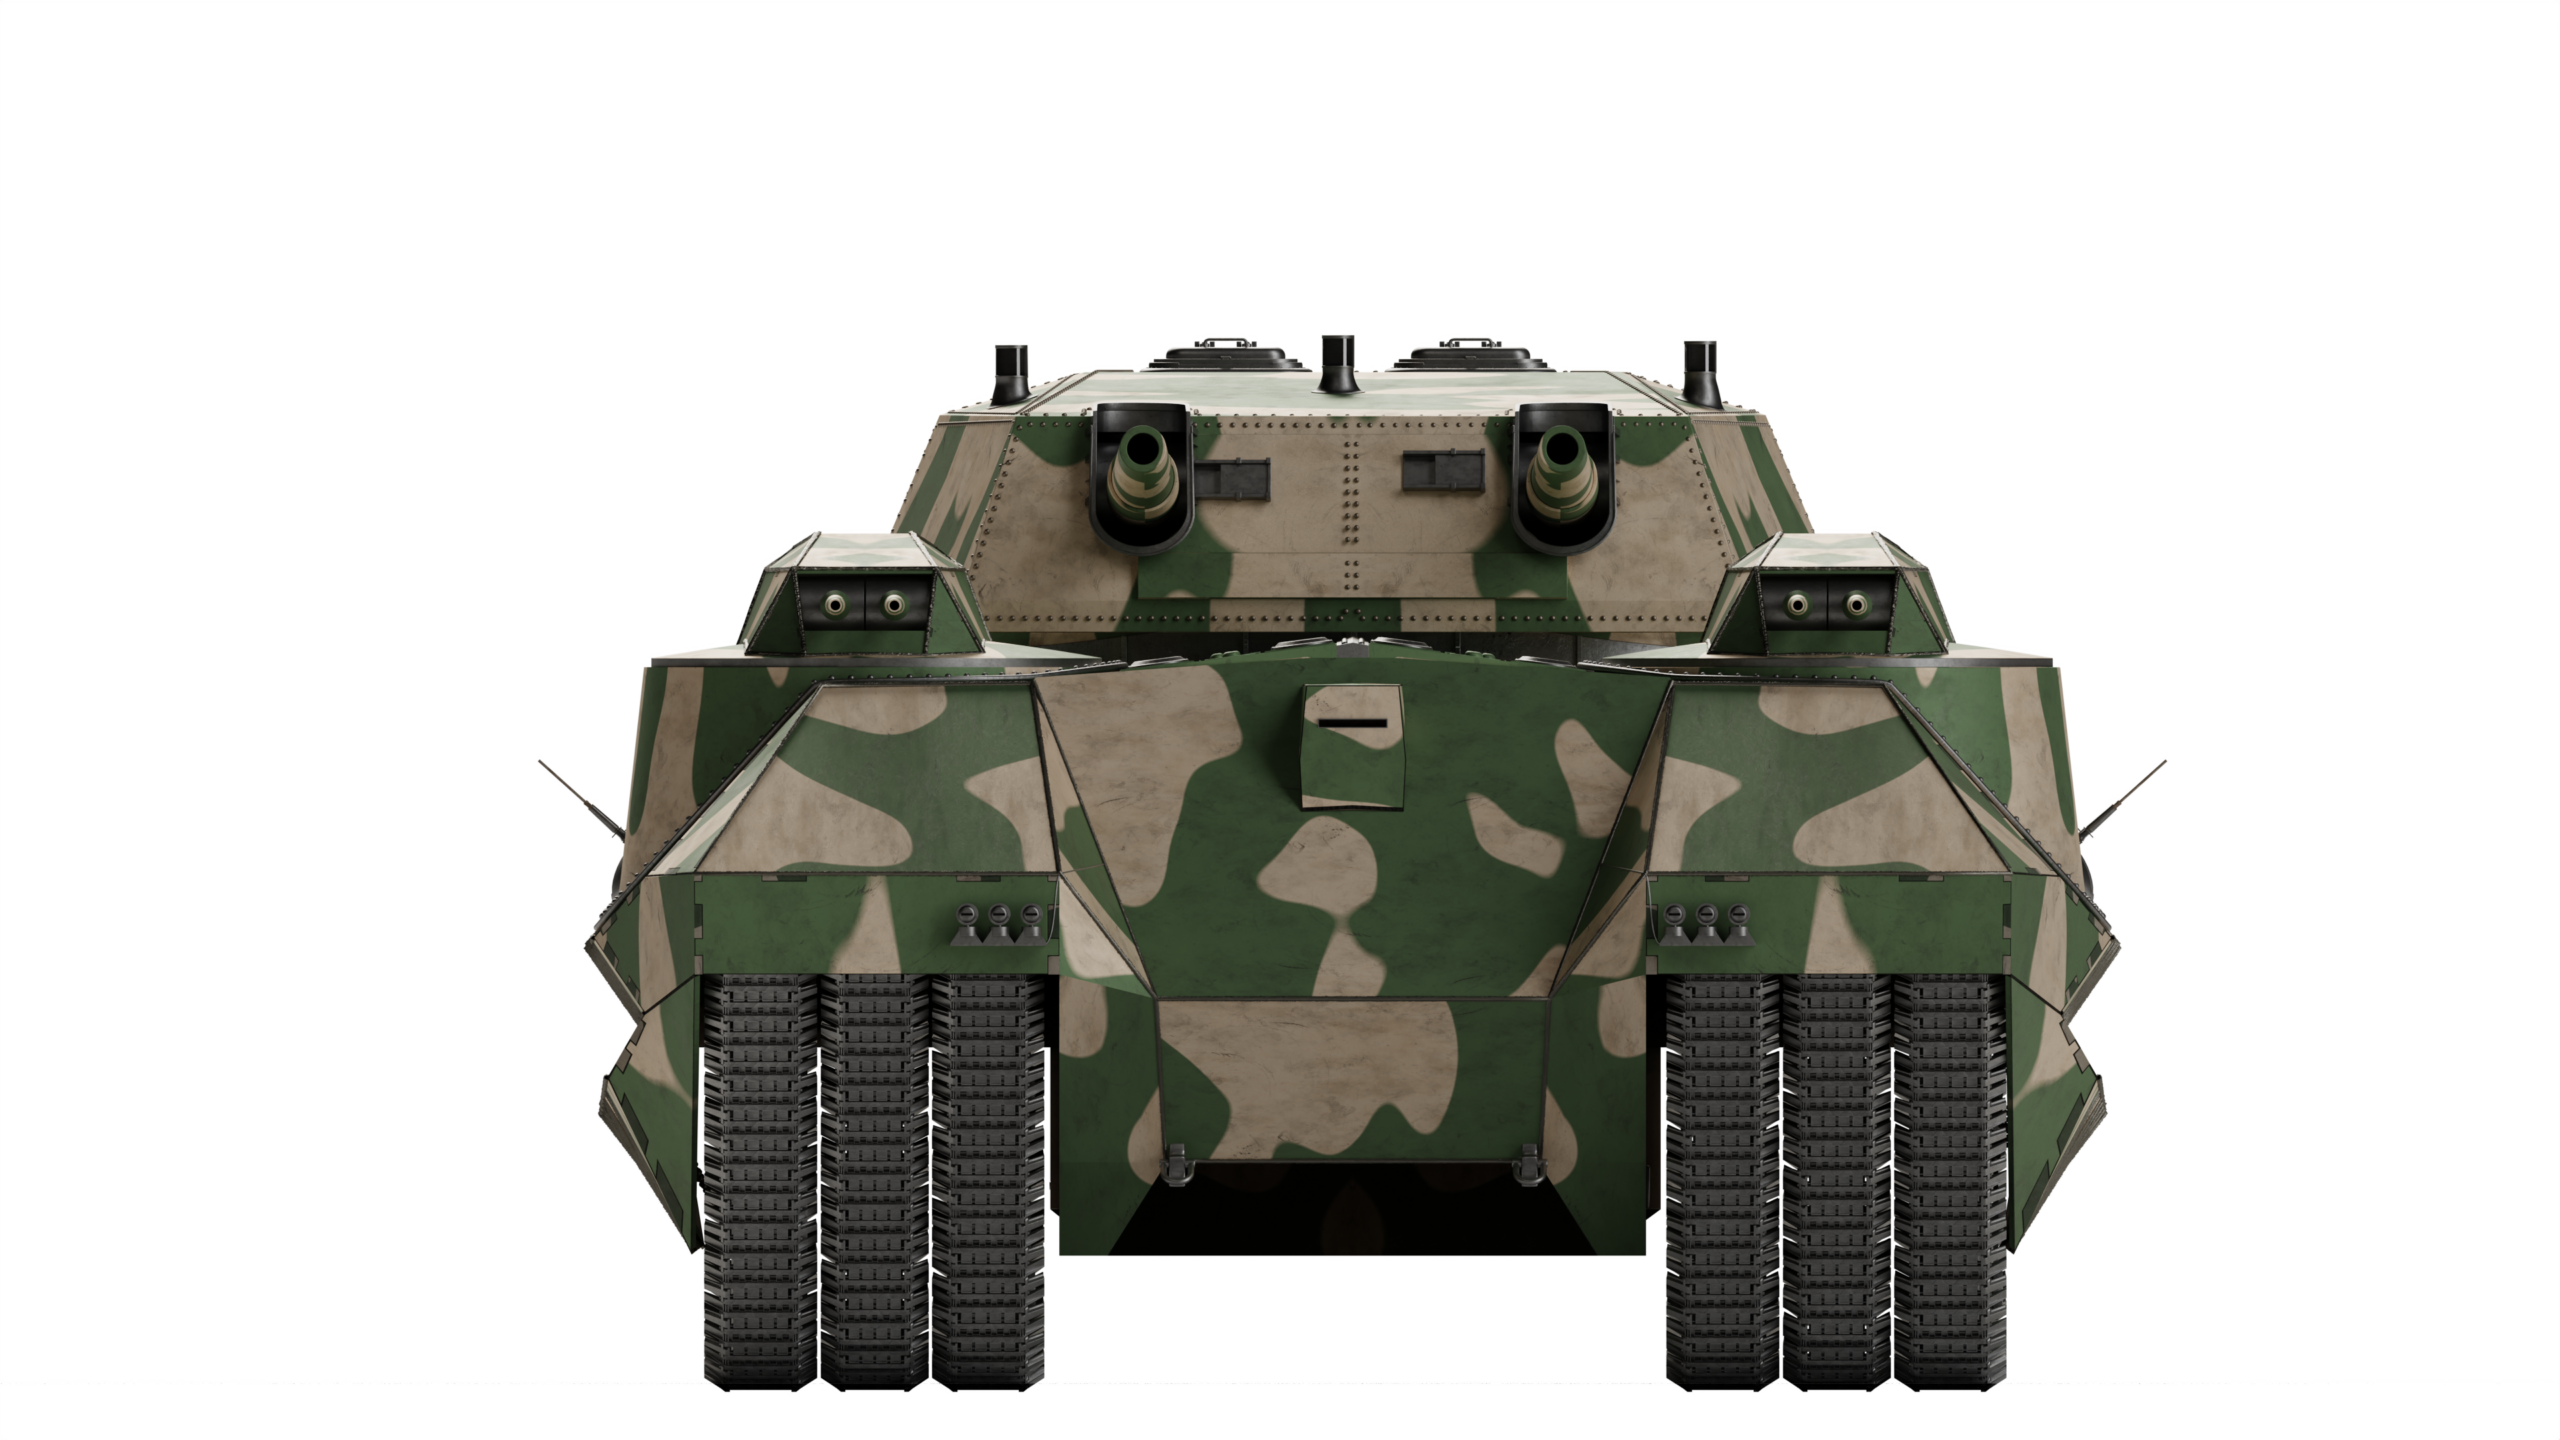 Landkreuzer P. 1500 Monster, Military Wiki